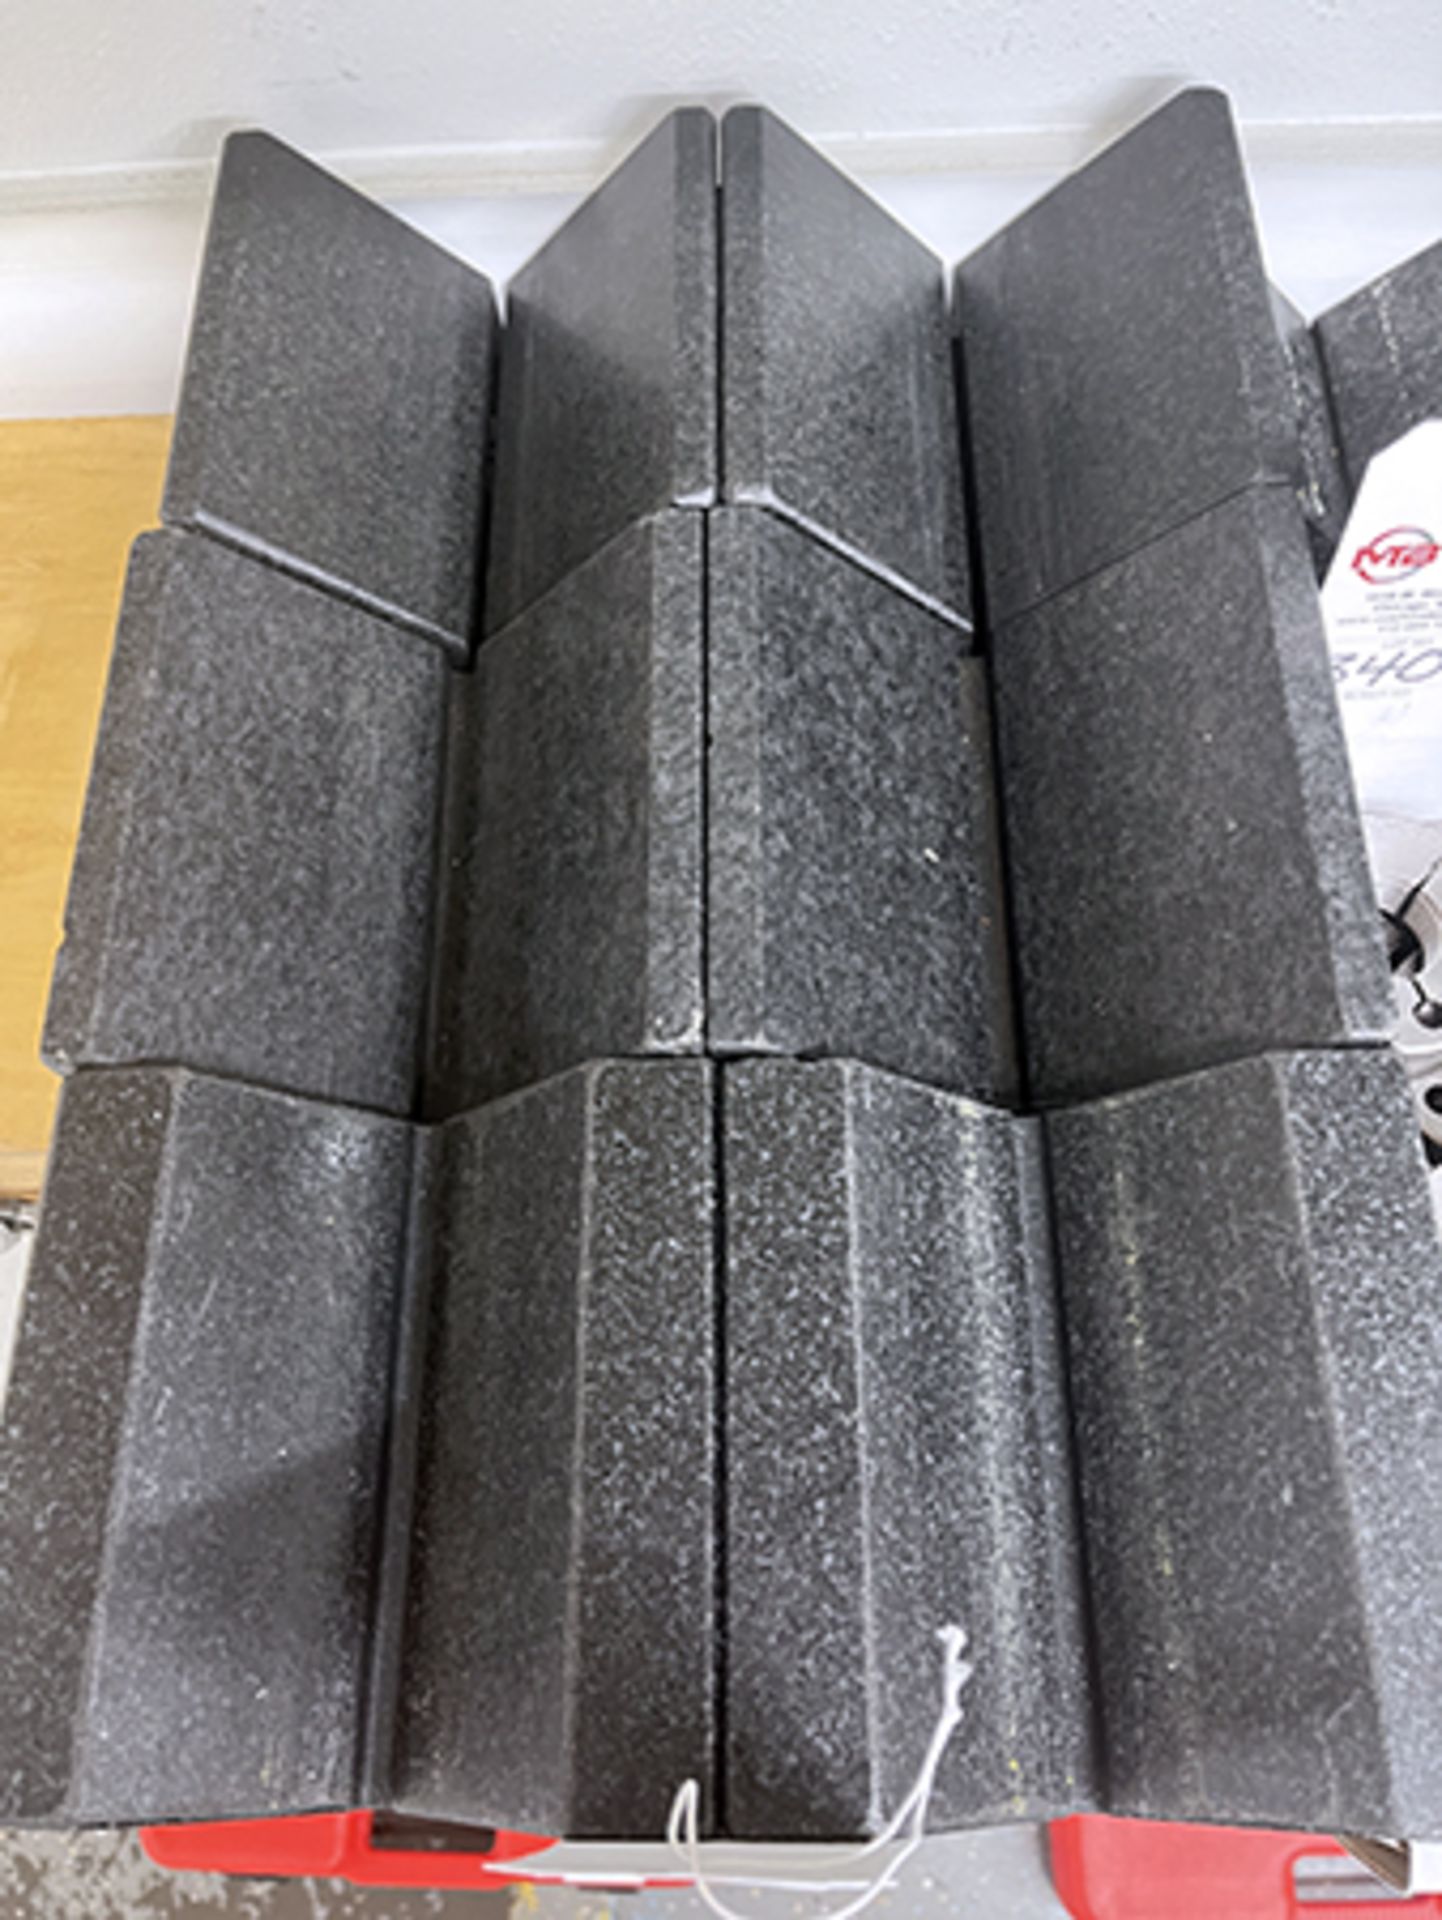 Black Granite V-Blocks - Image 4 of 6